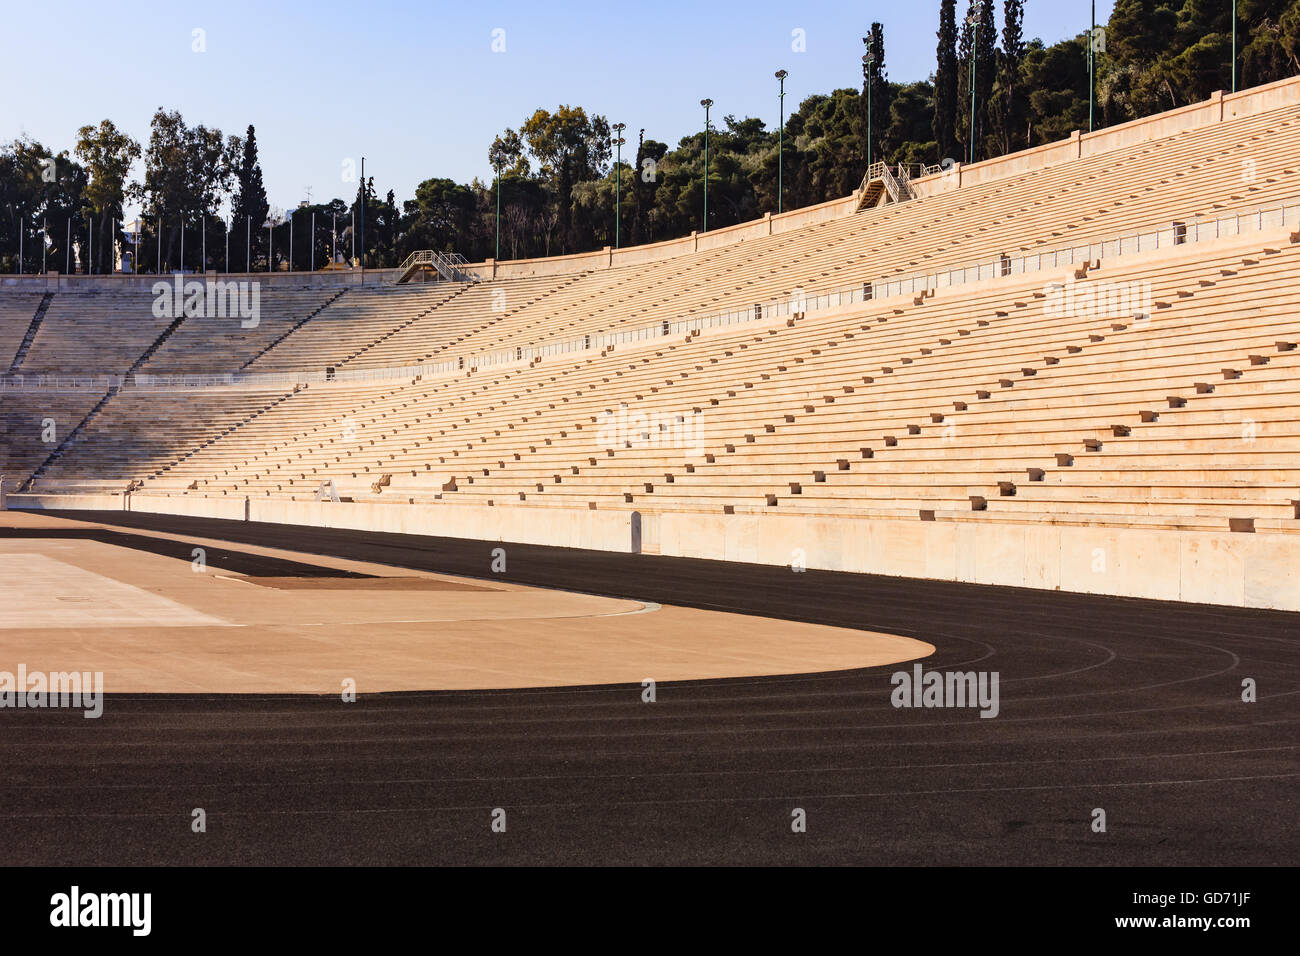 Athen, Griechenland - Marmor-Olympia-Stadion in der Hauptstadt Athen in Griechenland; Es war der Austragungsort der ersten Olympischen Spiele der Neuzeit im Jahre 1896 Stockfoto